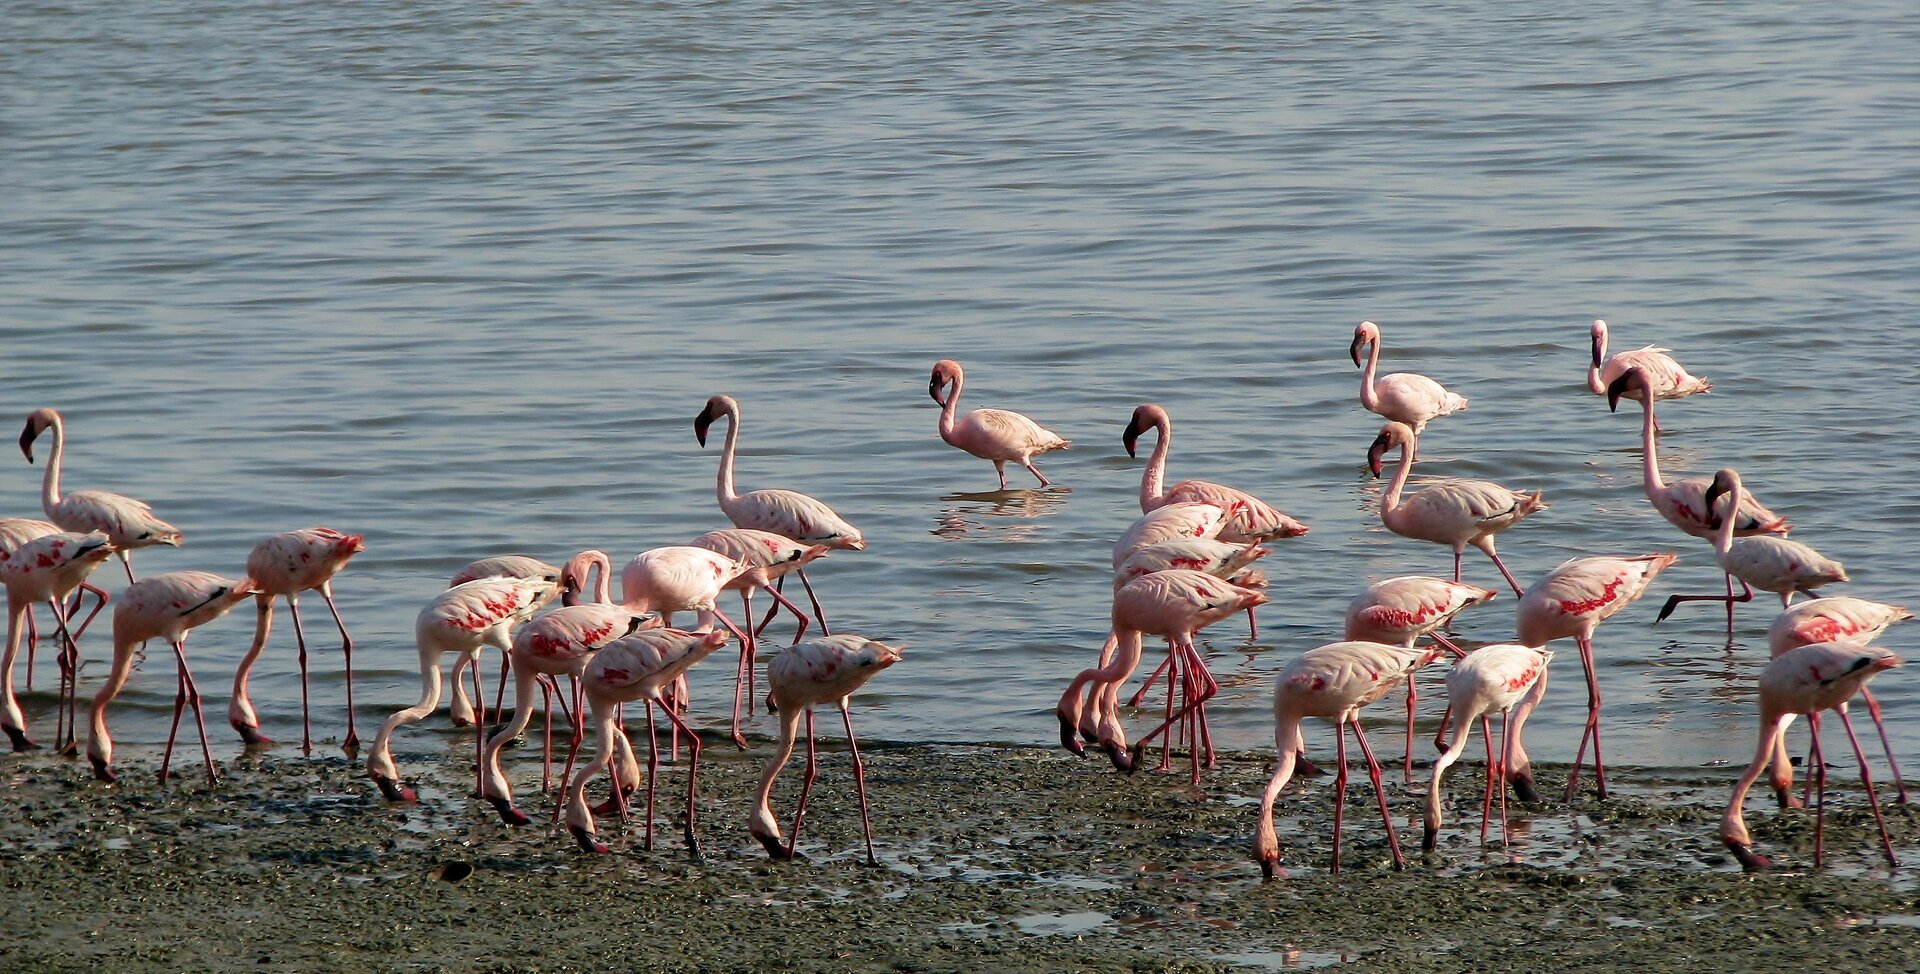 Fotografia prezentuje stado flamingów na brzegu dużego jeziora. Flamingi, to ptaki o wysokich czerwonych nogach, białoróżowym upierzeniu oraz długiej szyi zakończonej czerwonym zakrzywionym dziobem.